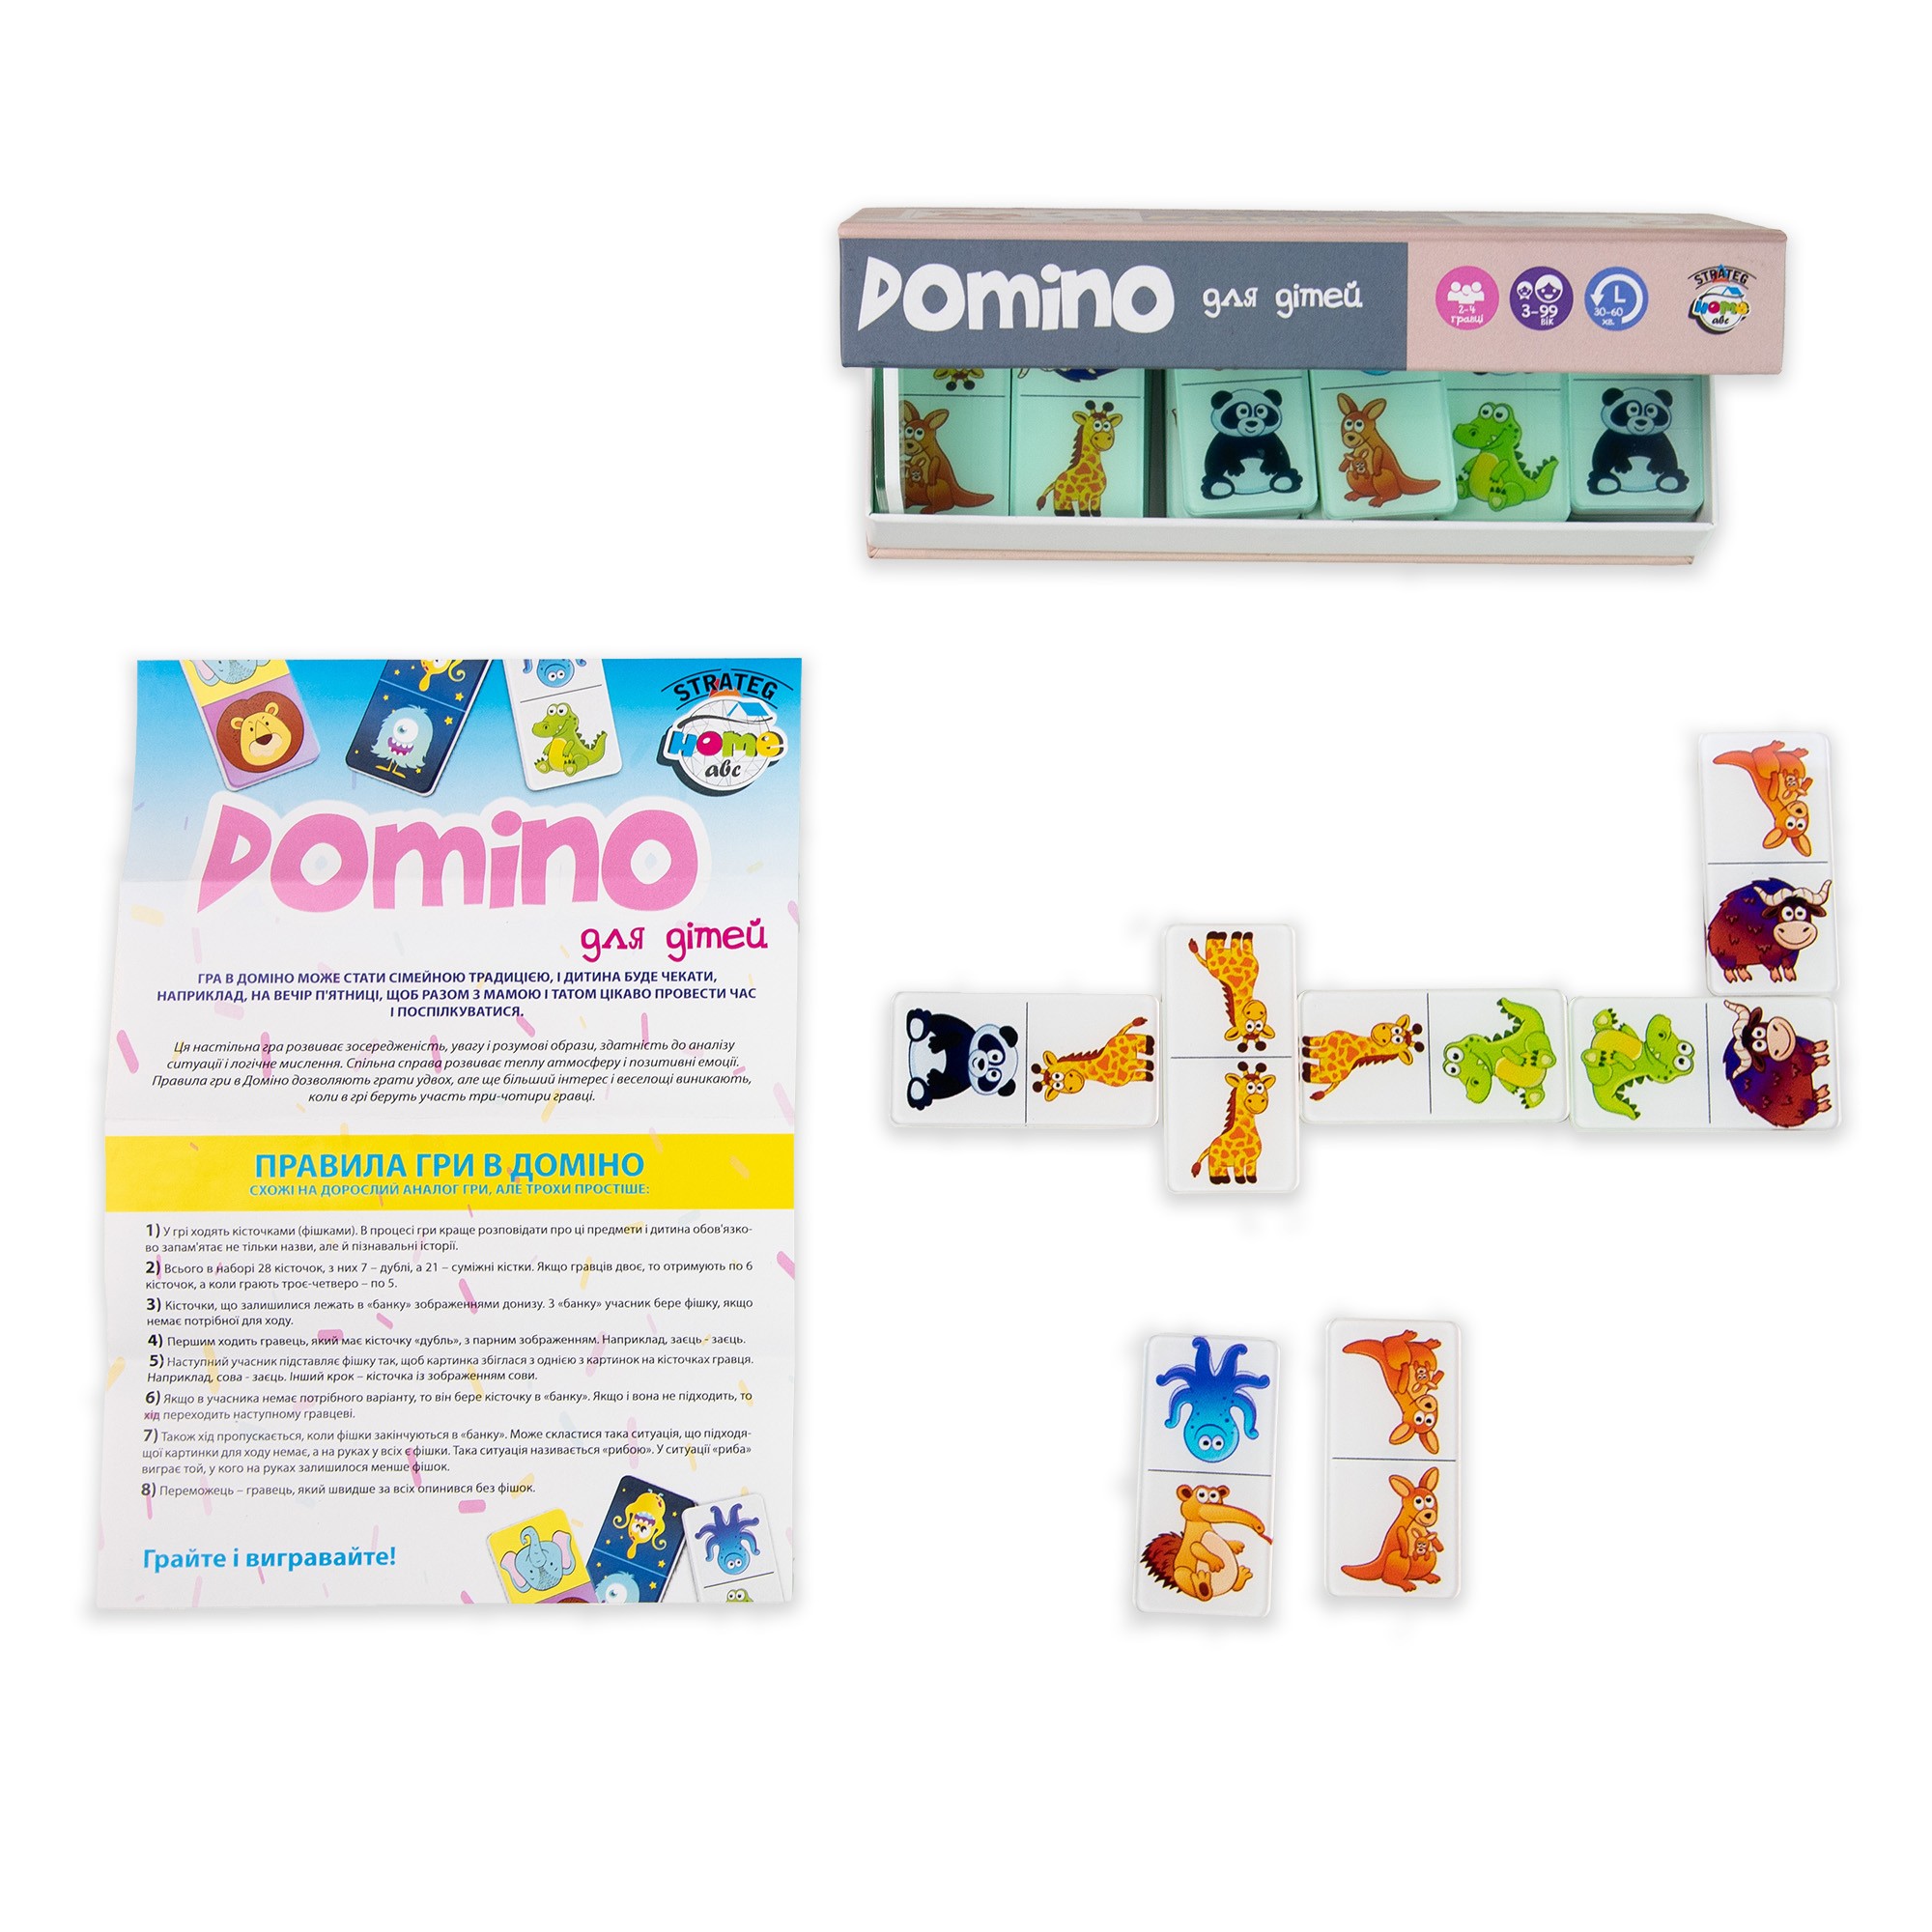 Настільна гра Доміно лімітована версія бежева (Domino Limited edition beige), бренду Strateg, для 2-4 гравців, час гри < 30хв. - 2 - KUBIX 